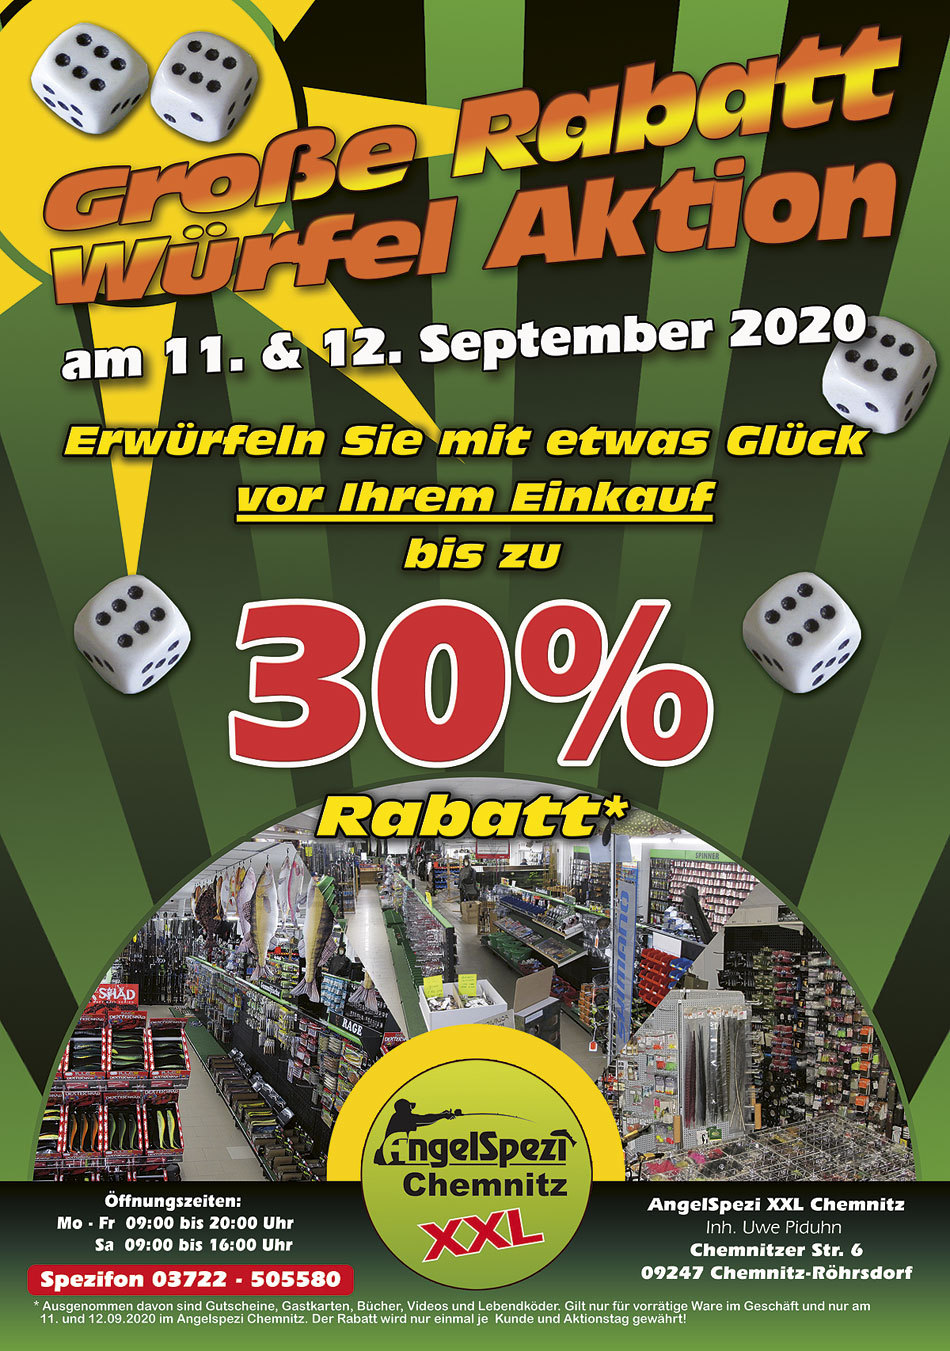 Große Rabatt-Würfel-Aktion im Angelspezi XXL Chemnitz am 11. und 12. September 2020